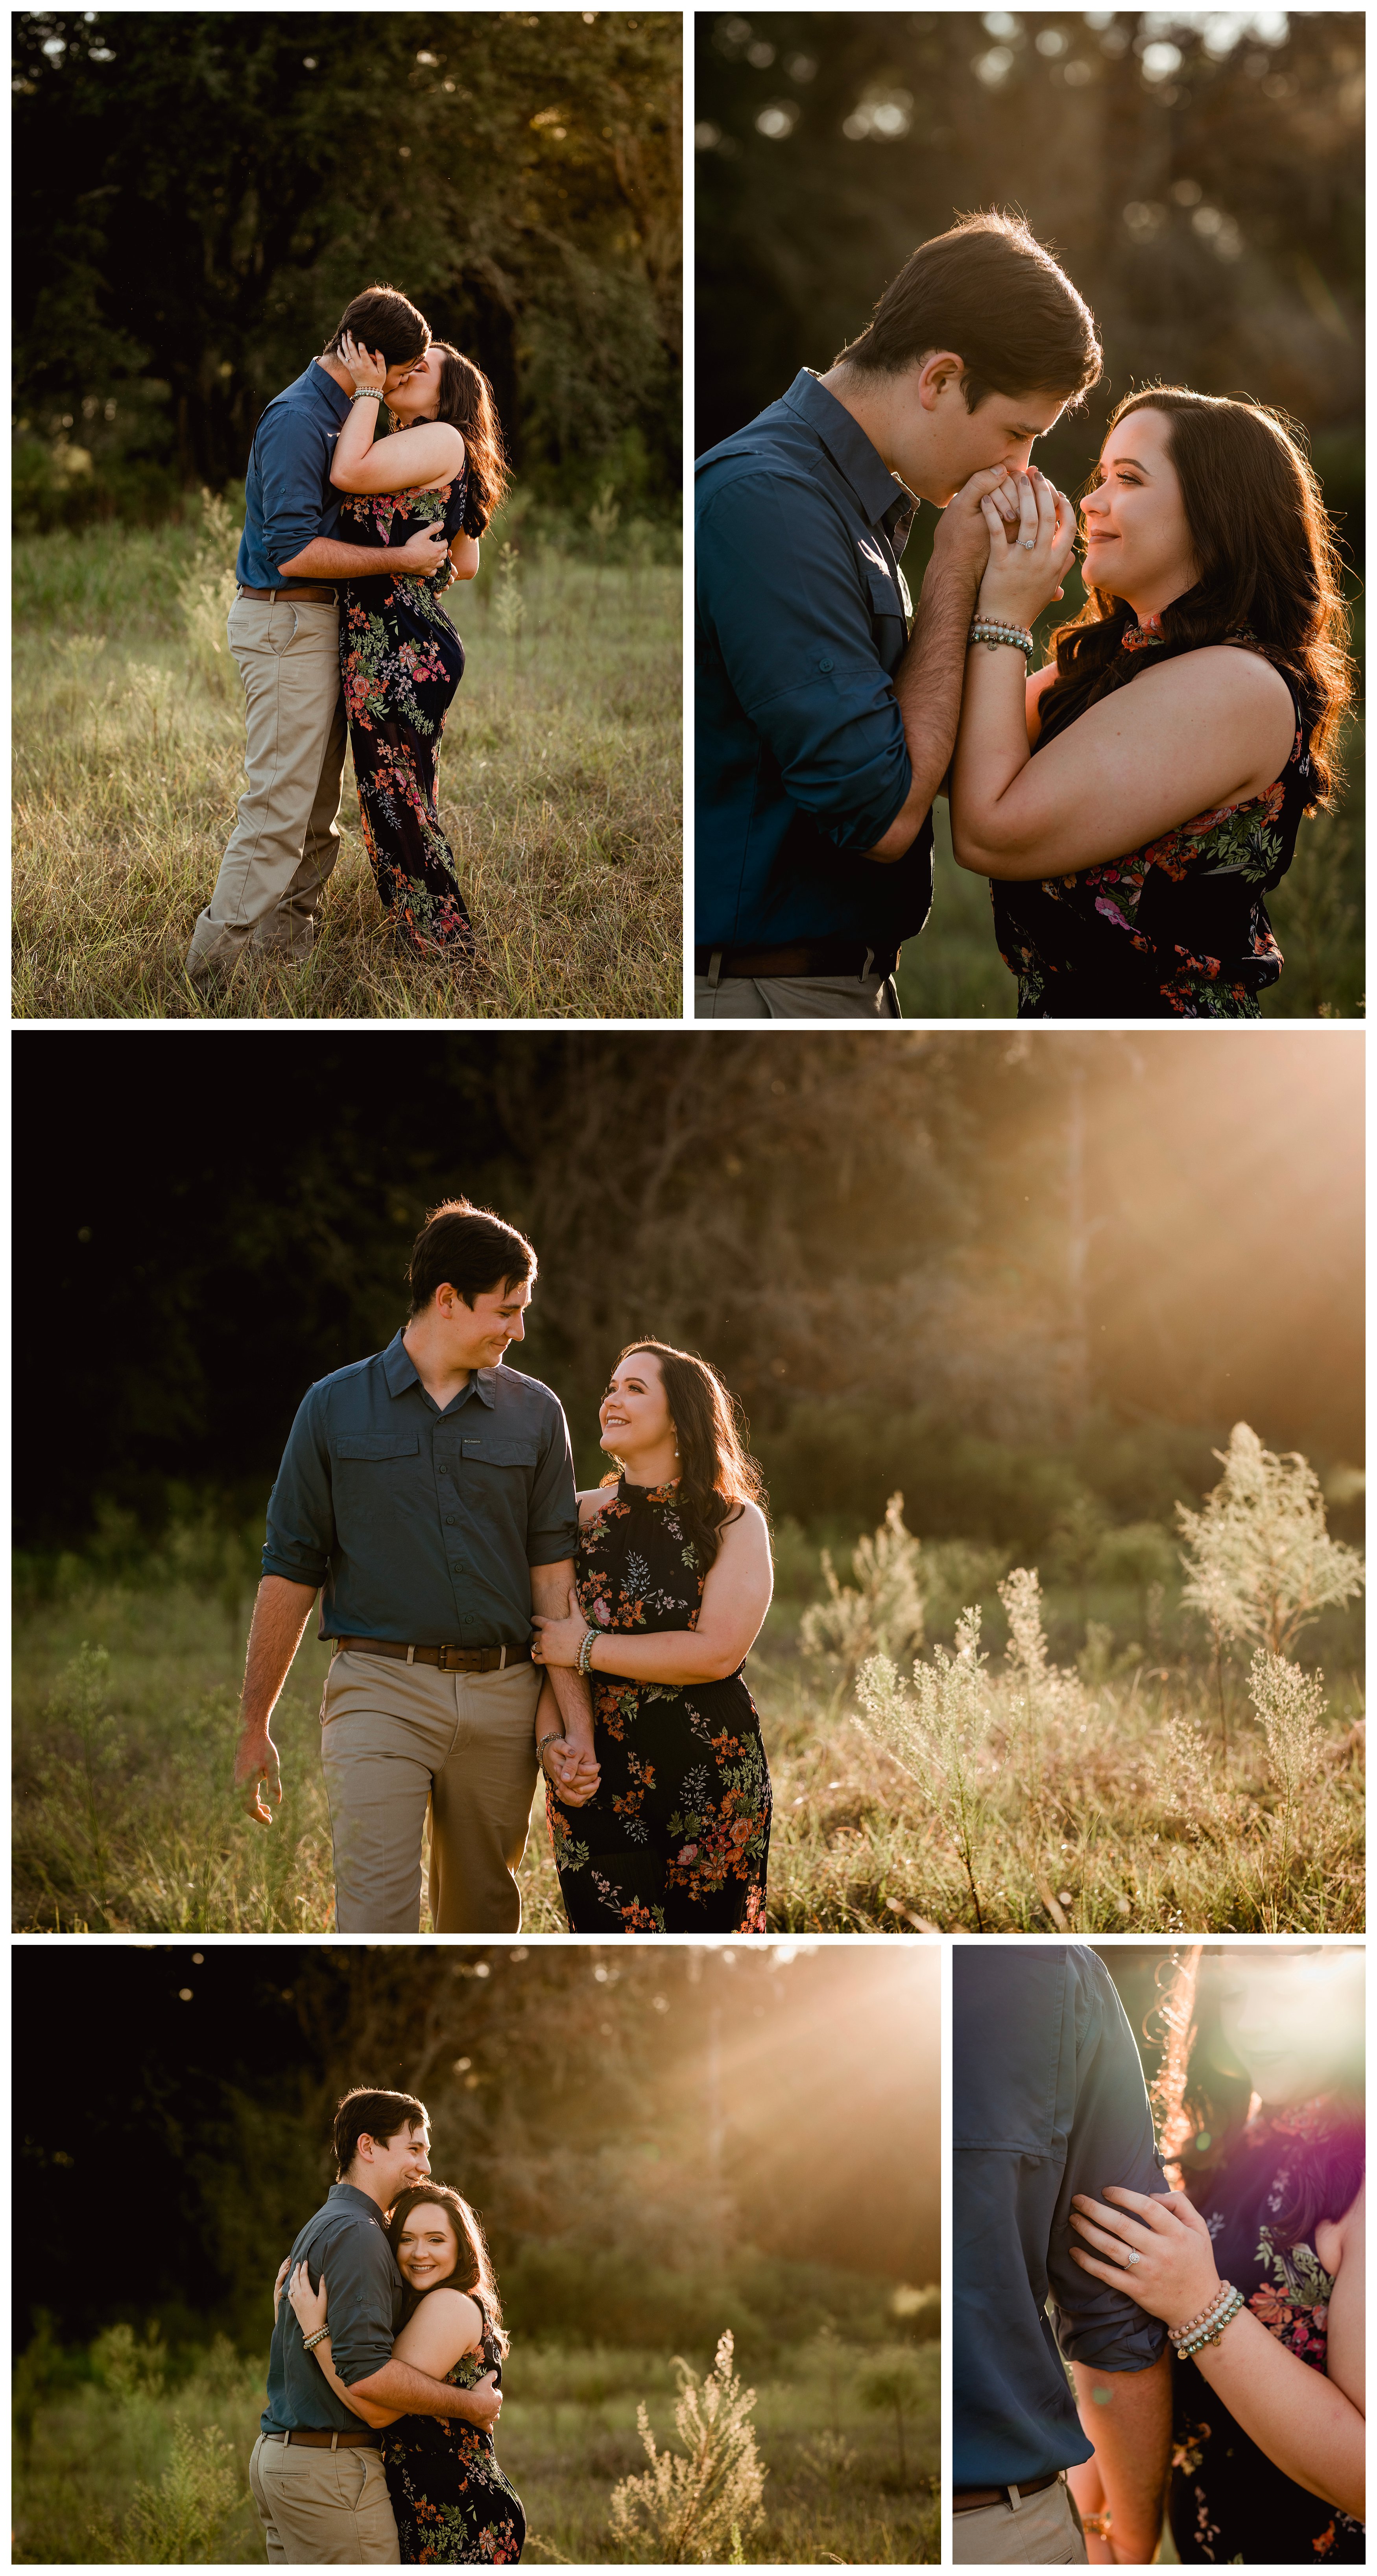 Professional engagement photo posing ideas during sunset. Florida wedding photographer.